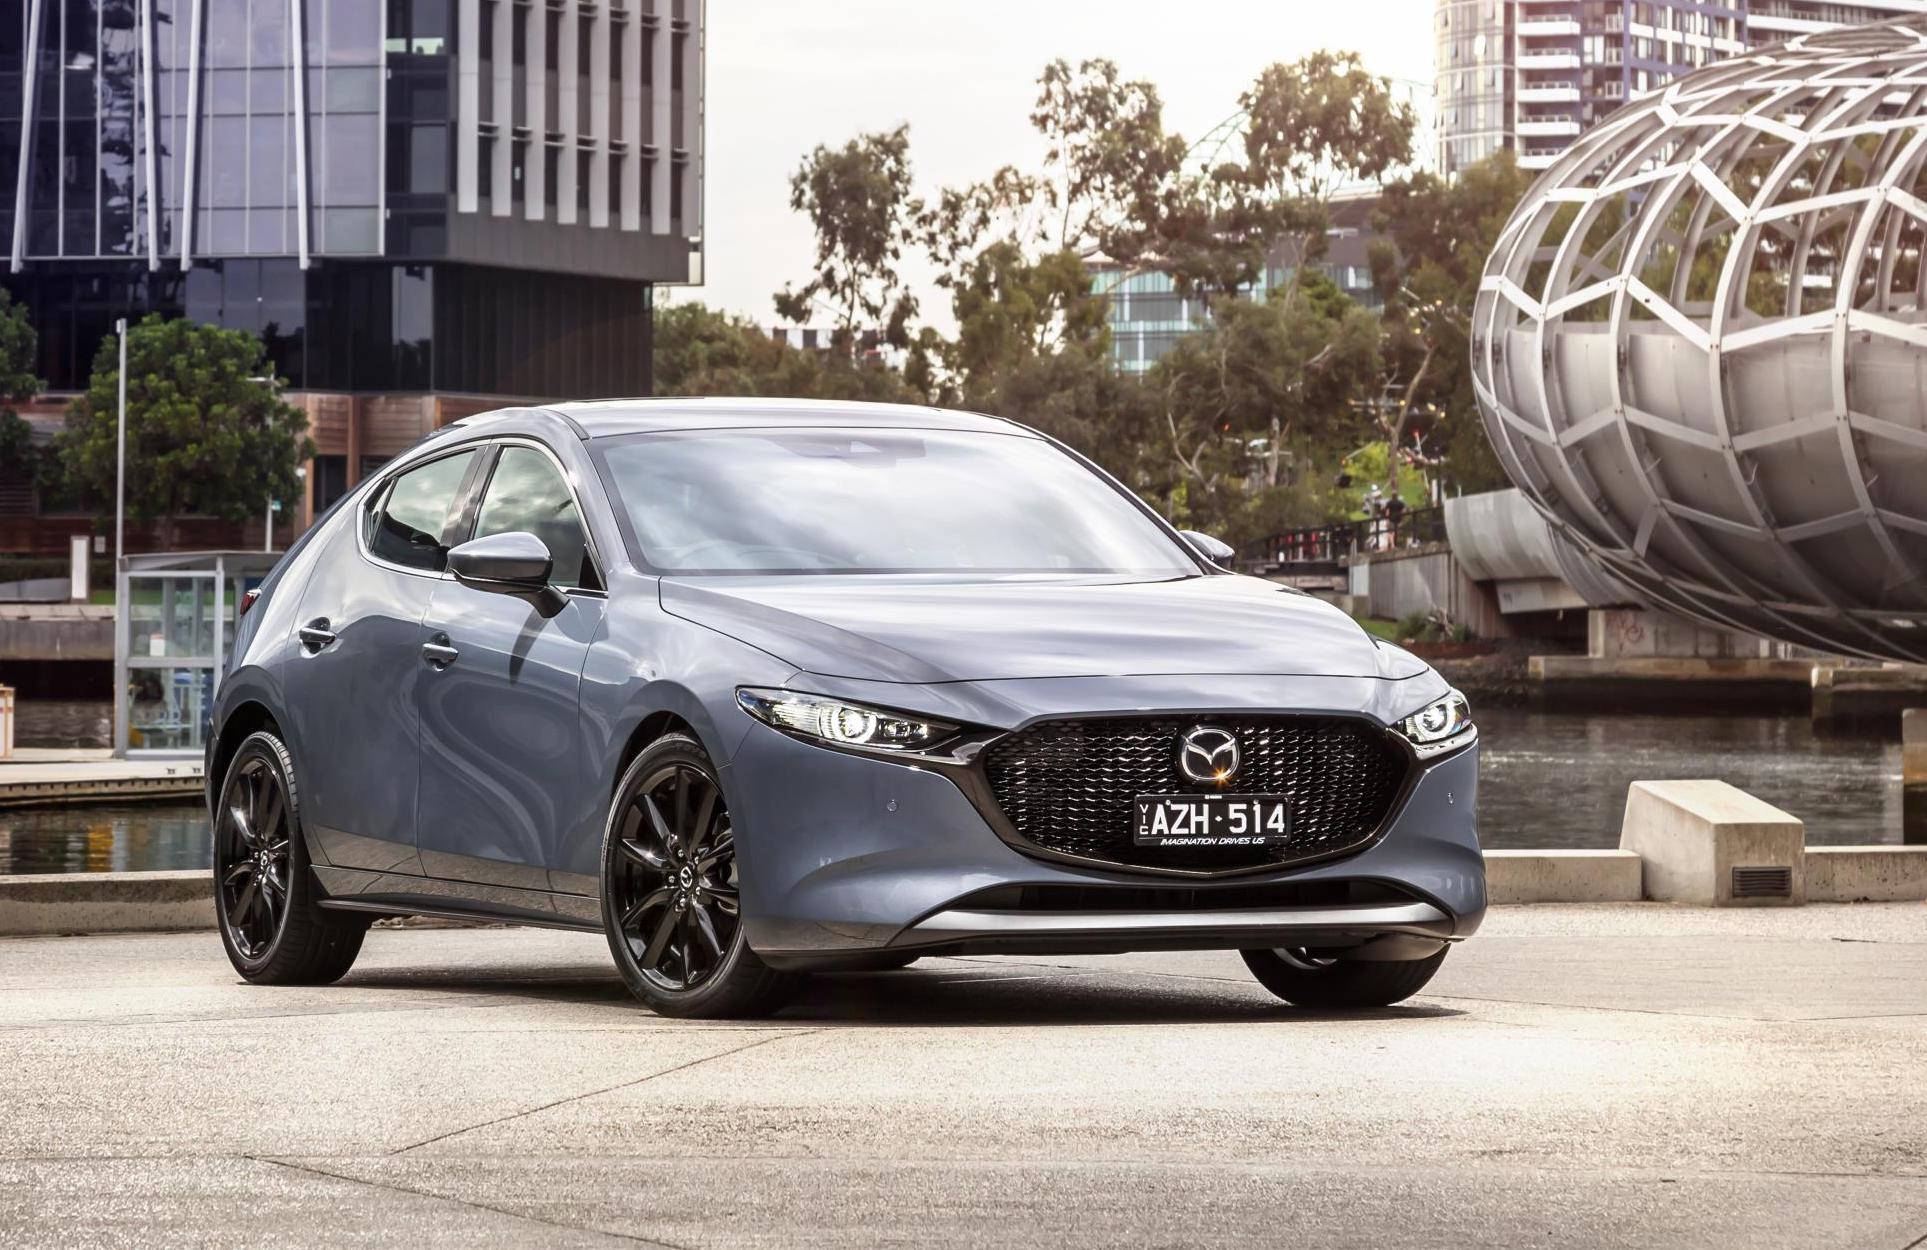 2019 Mazda3 Australian prices, specs announced - PerformanceDrive